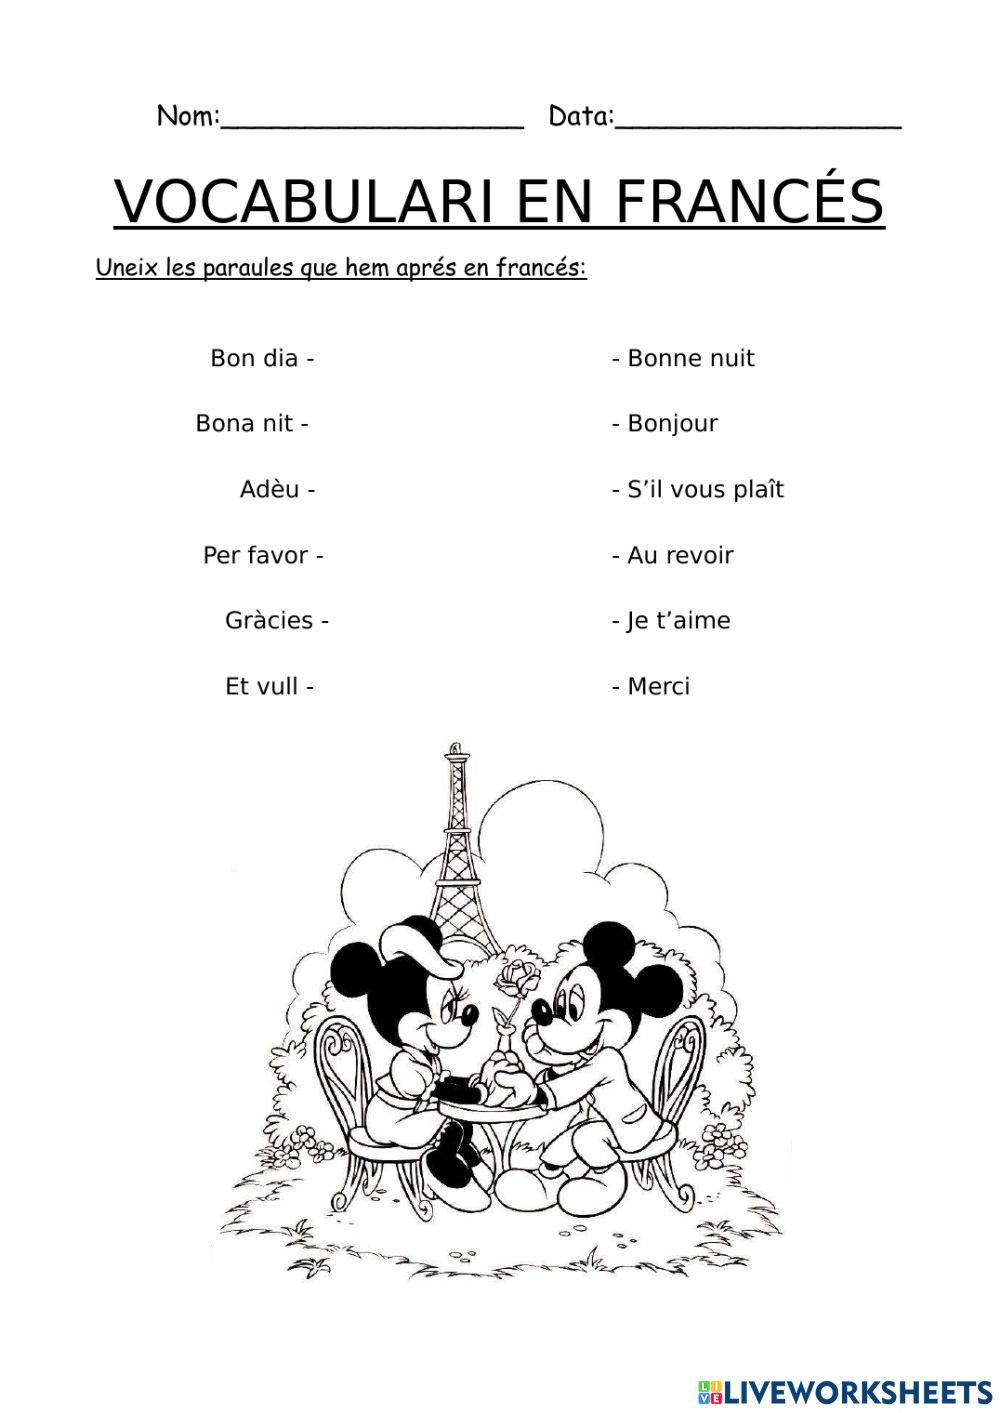 Vocabulari en francés